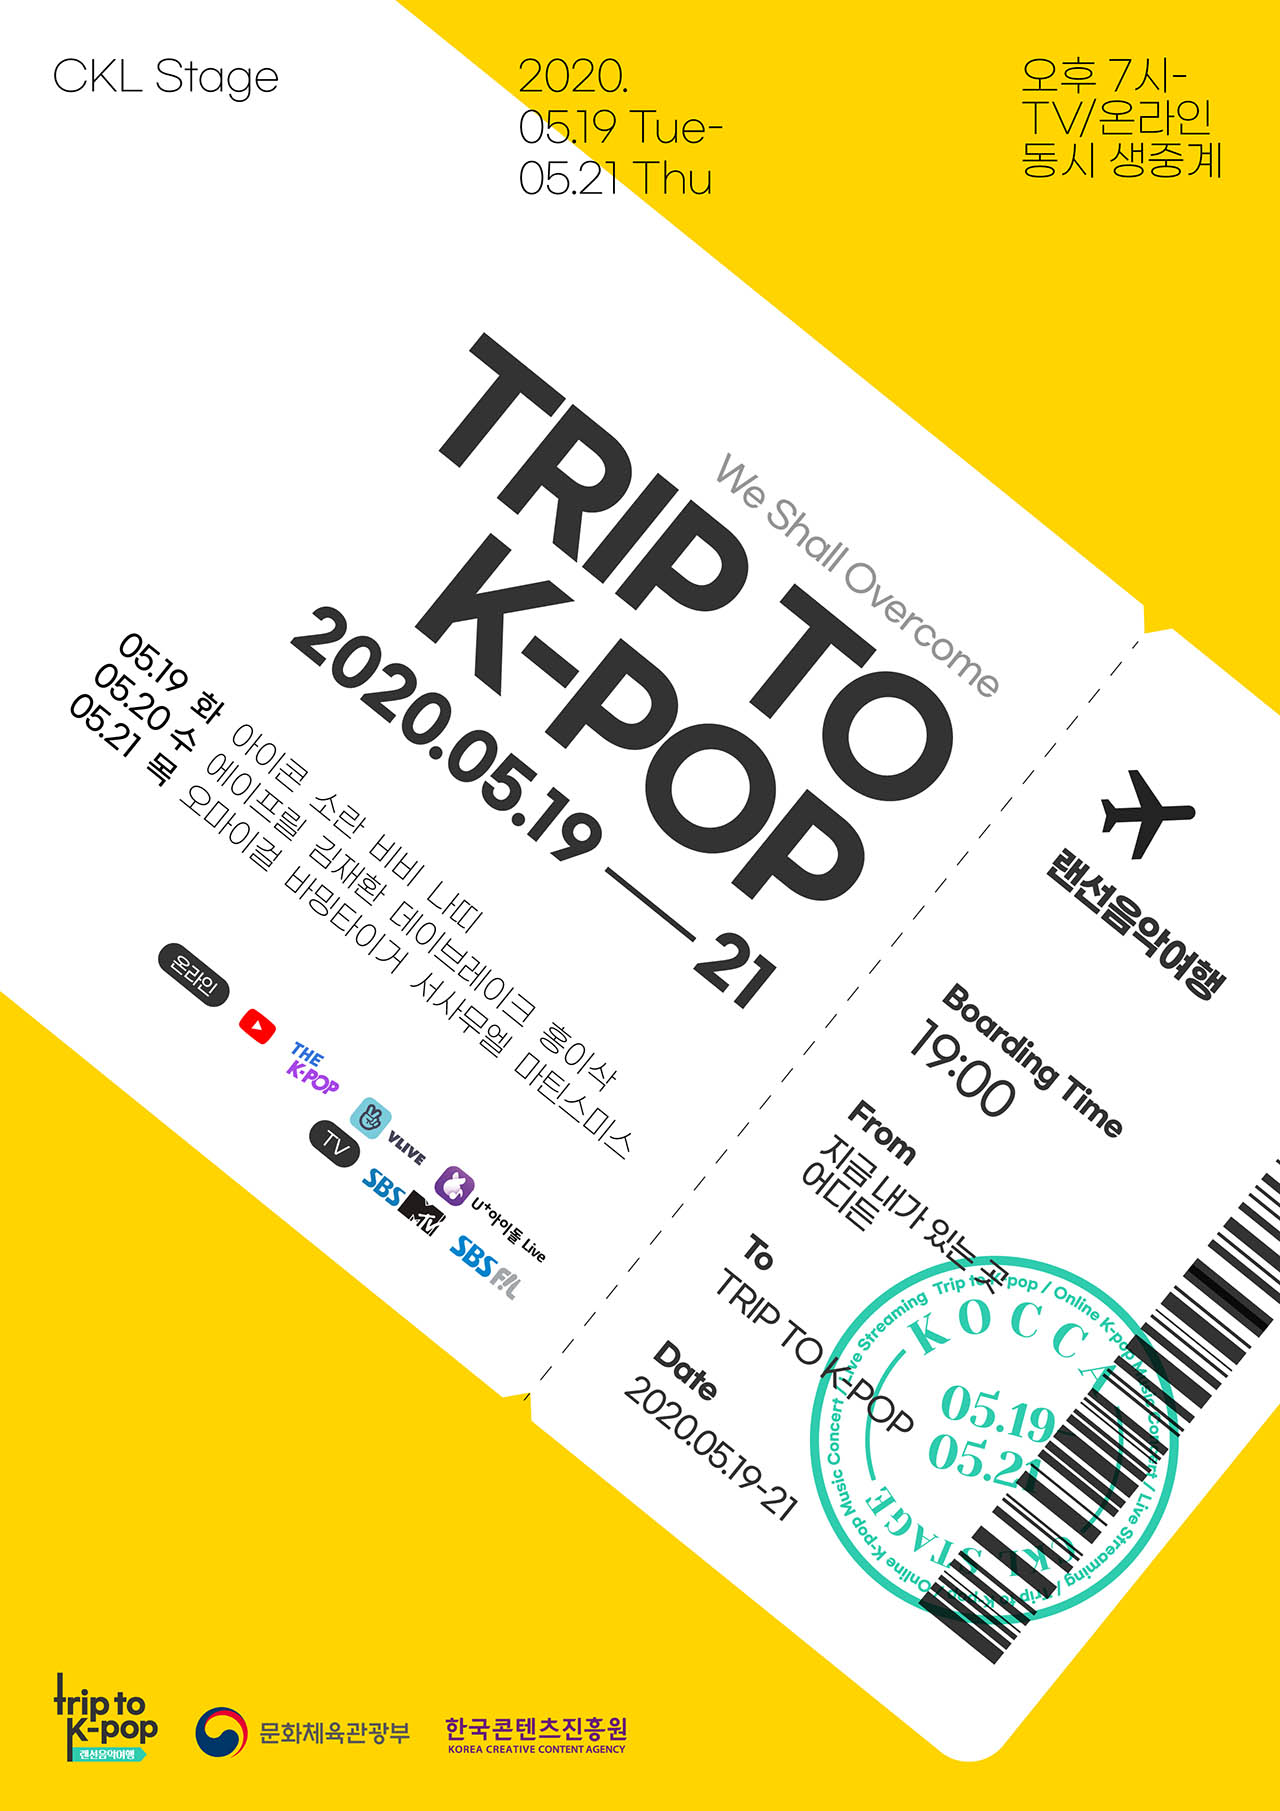 Online KPOP Concert 'Trip to K-POP' will be held